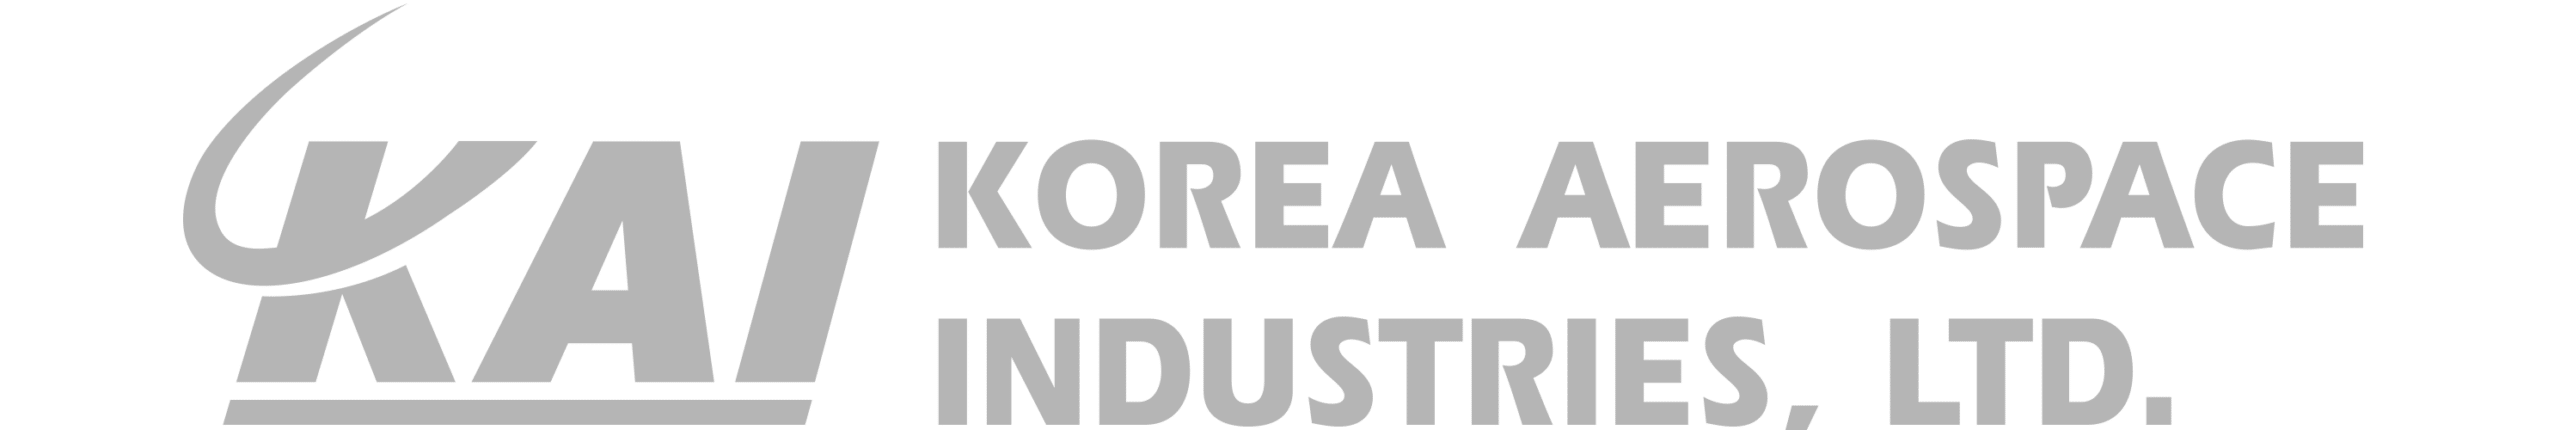 de-korea-aerospace-industries-gray